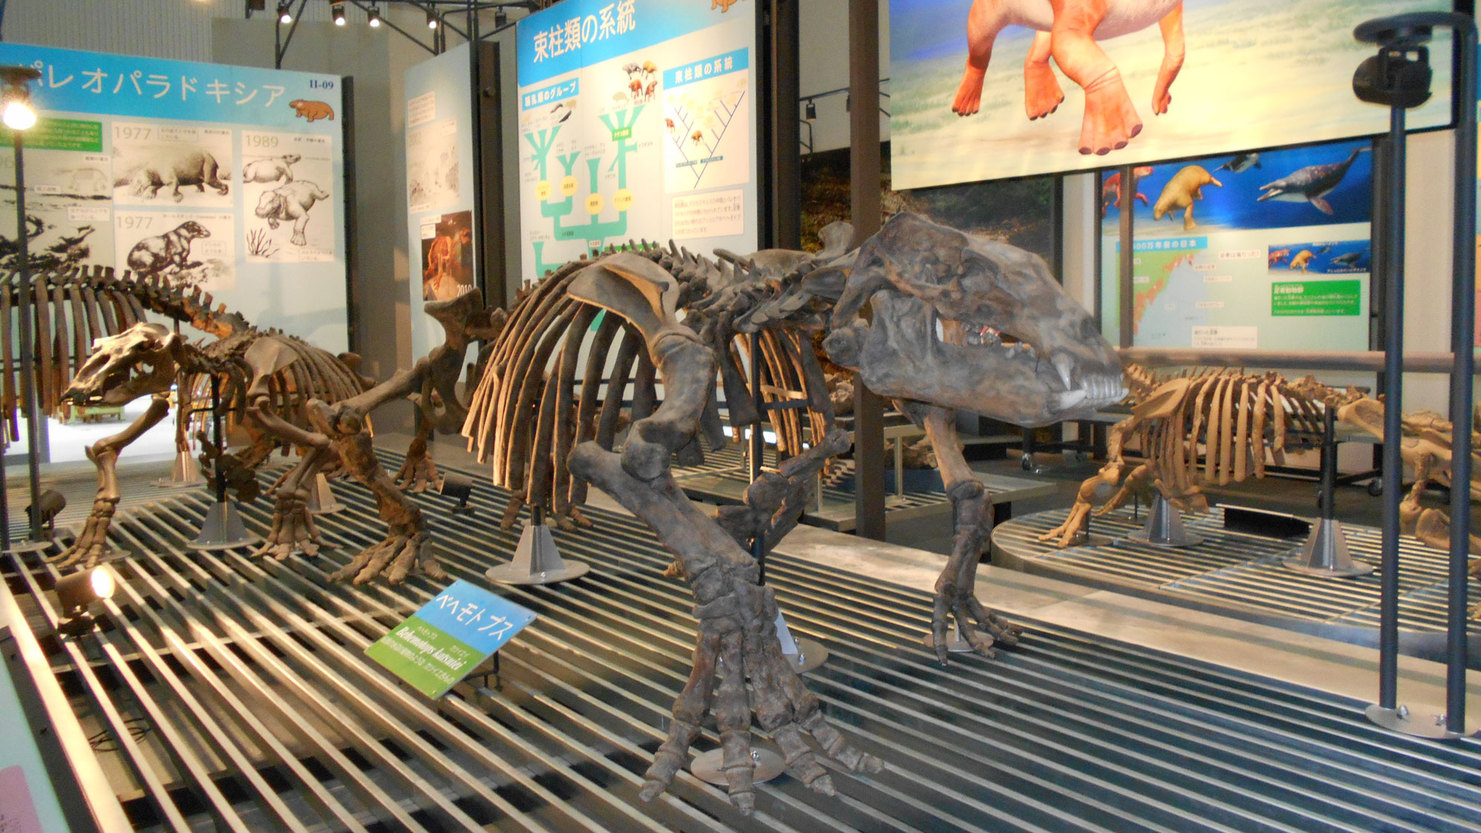  足寄動物化石博物館